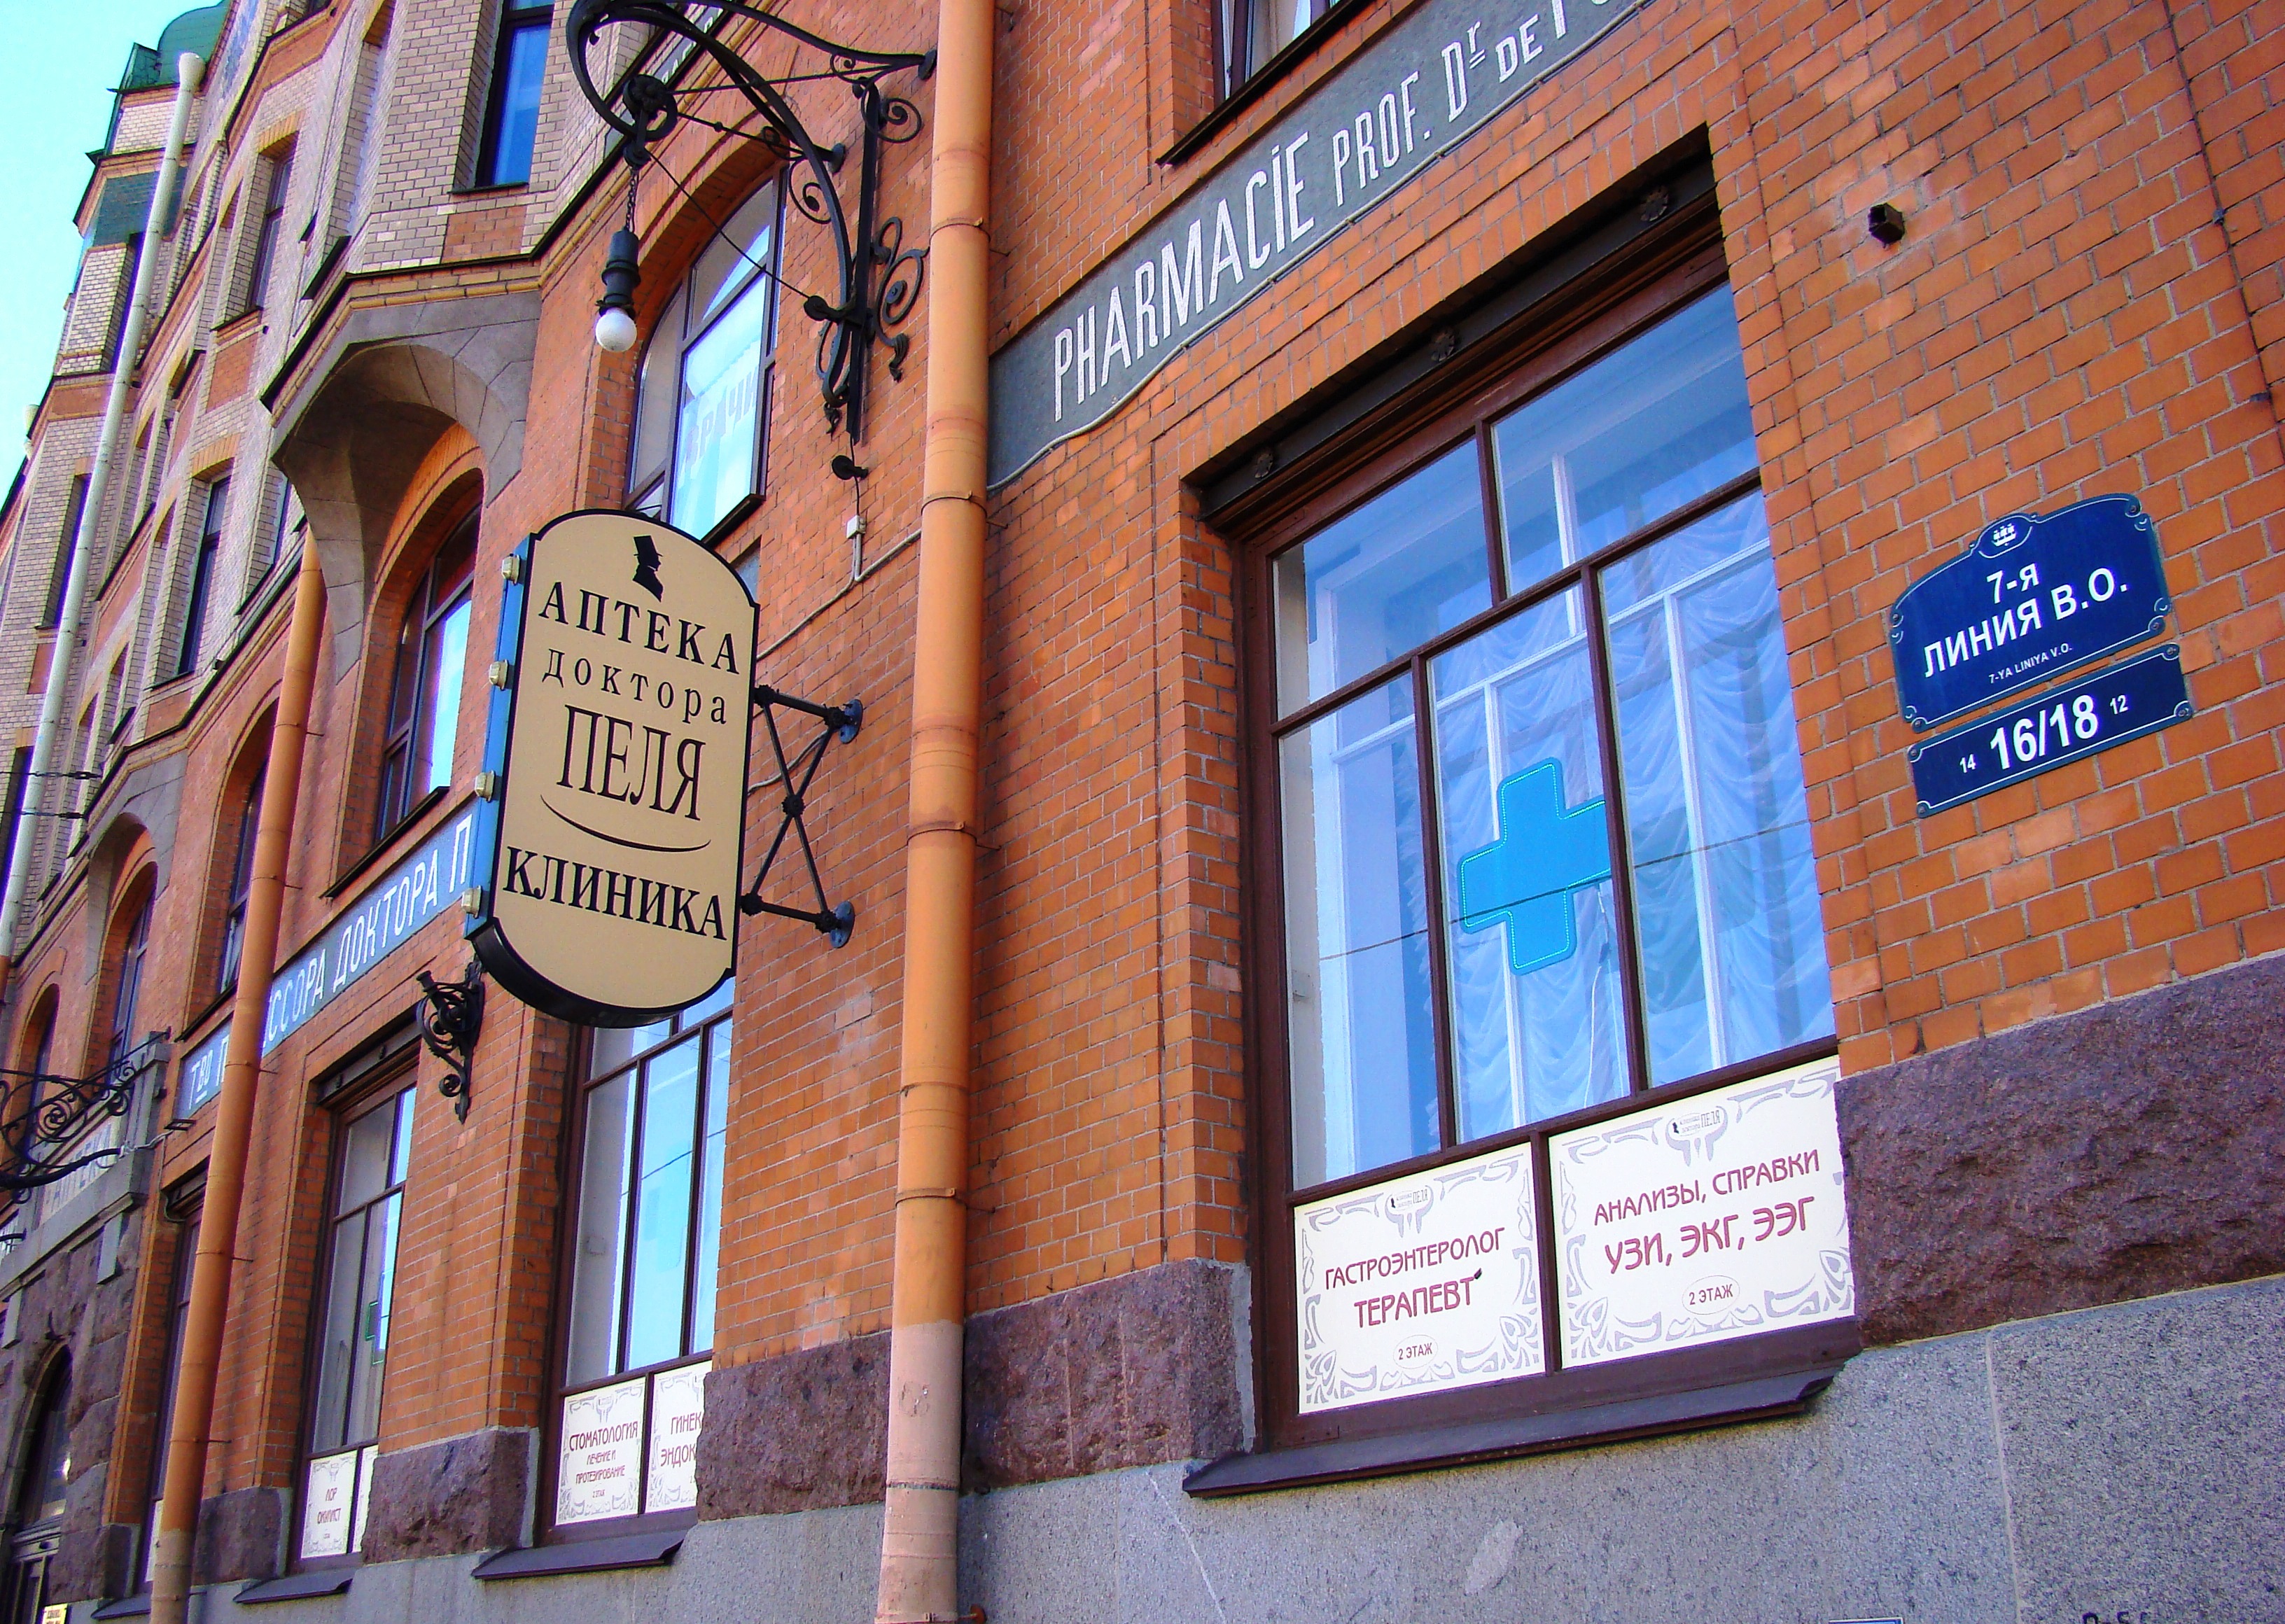 Аптека Вильгельма Пеля в Санкт-Петербурге